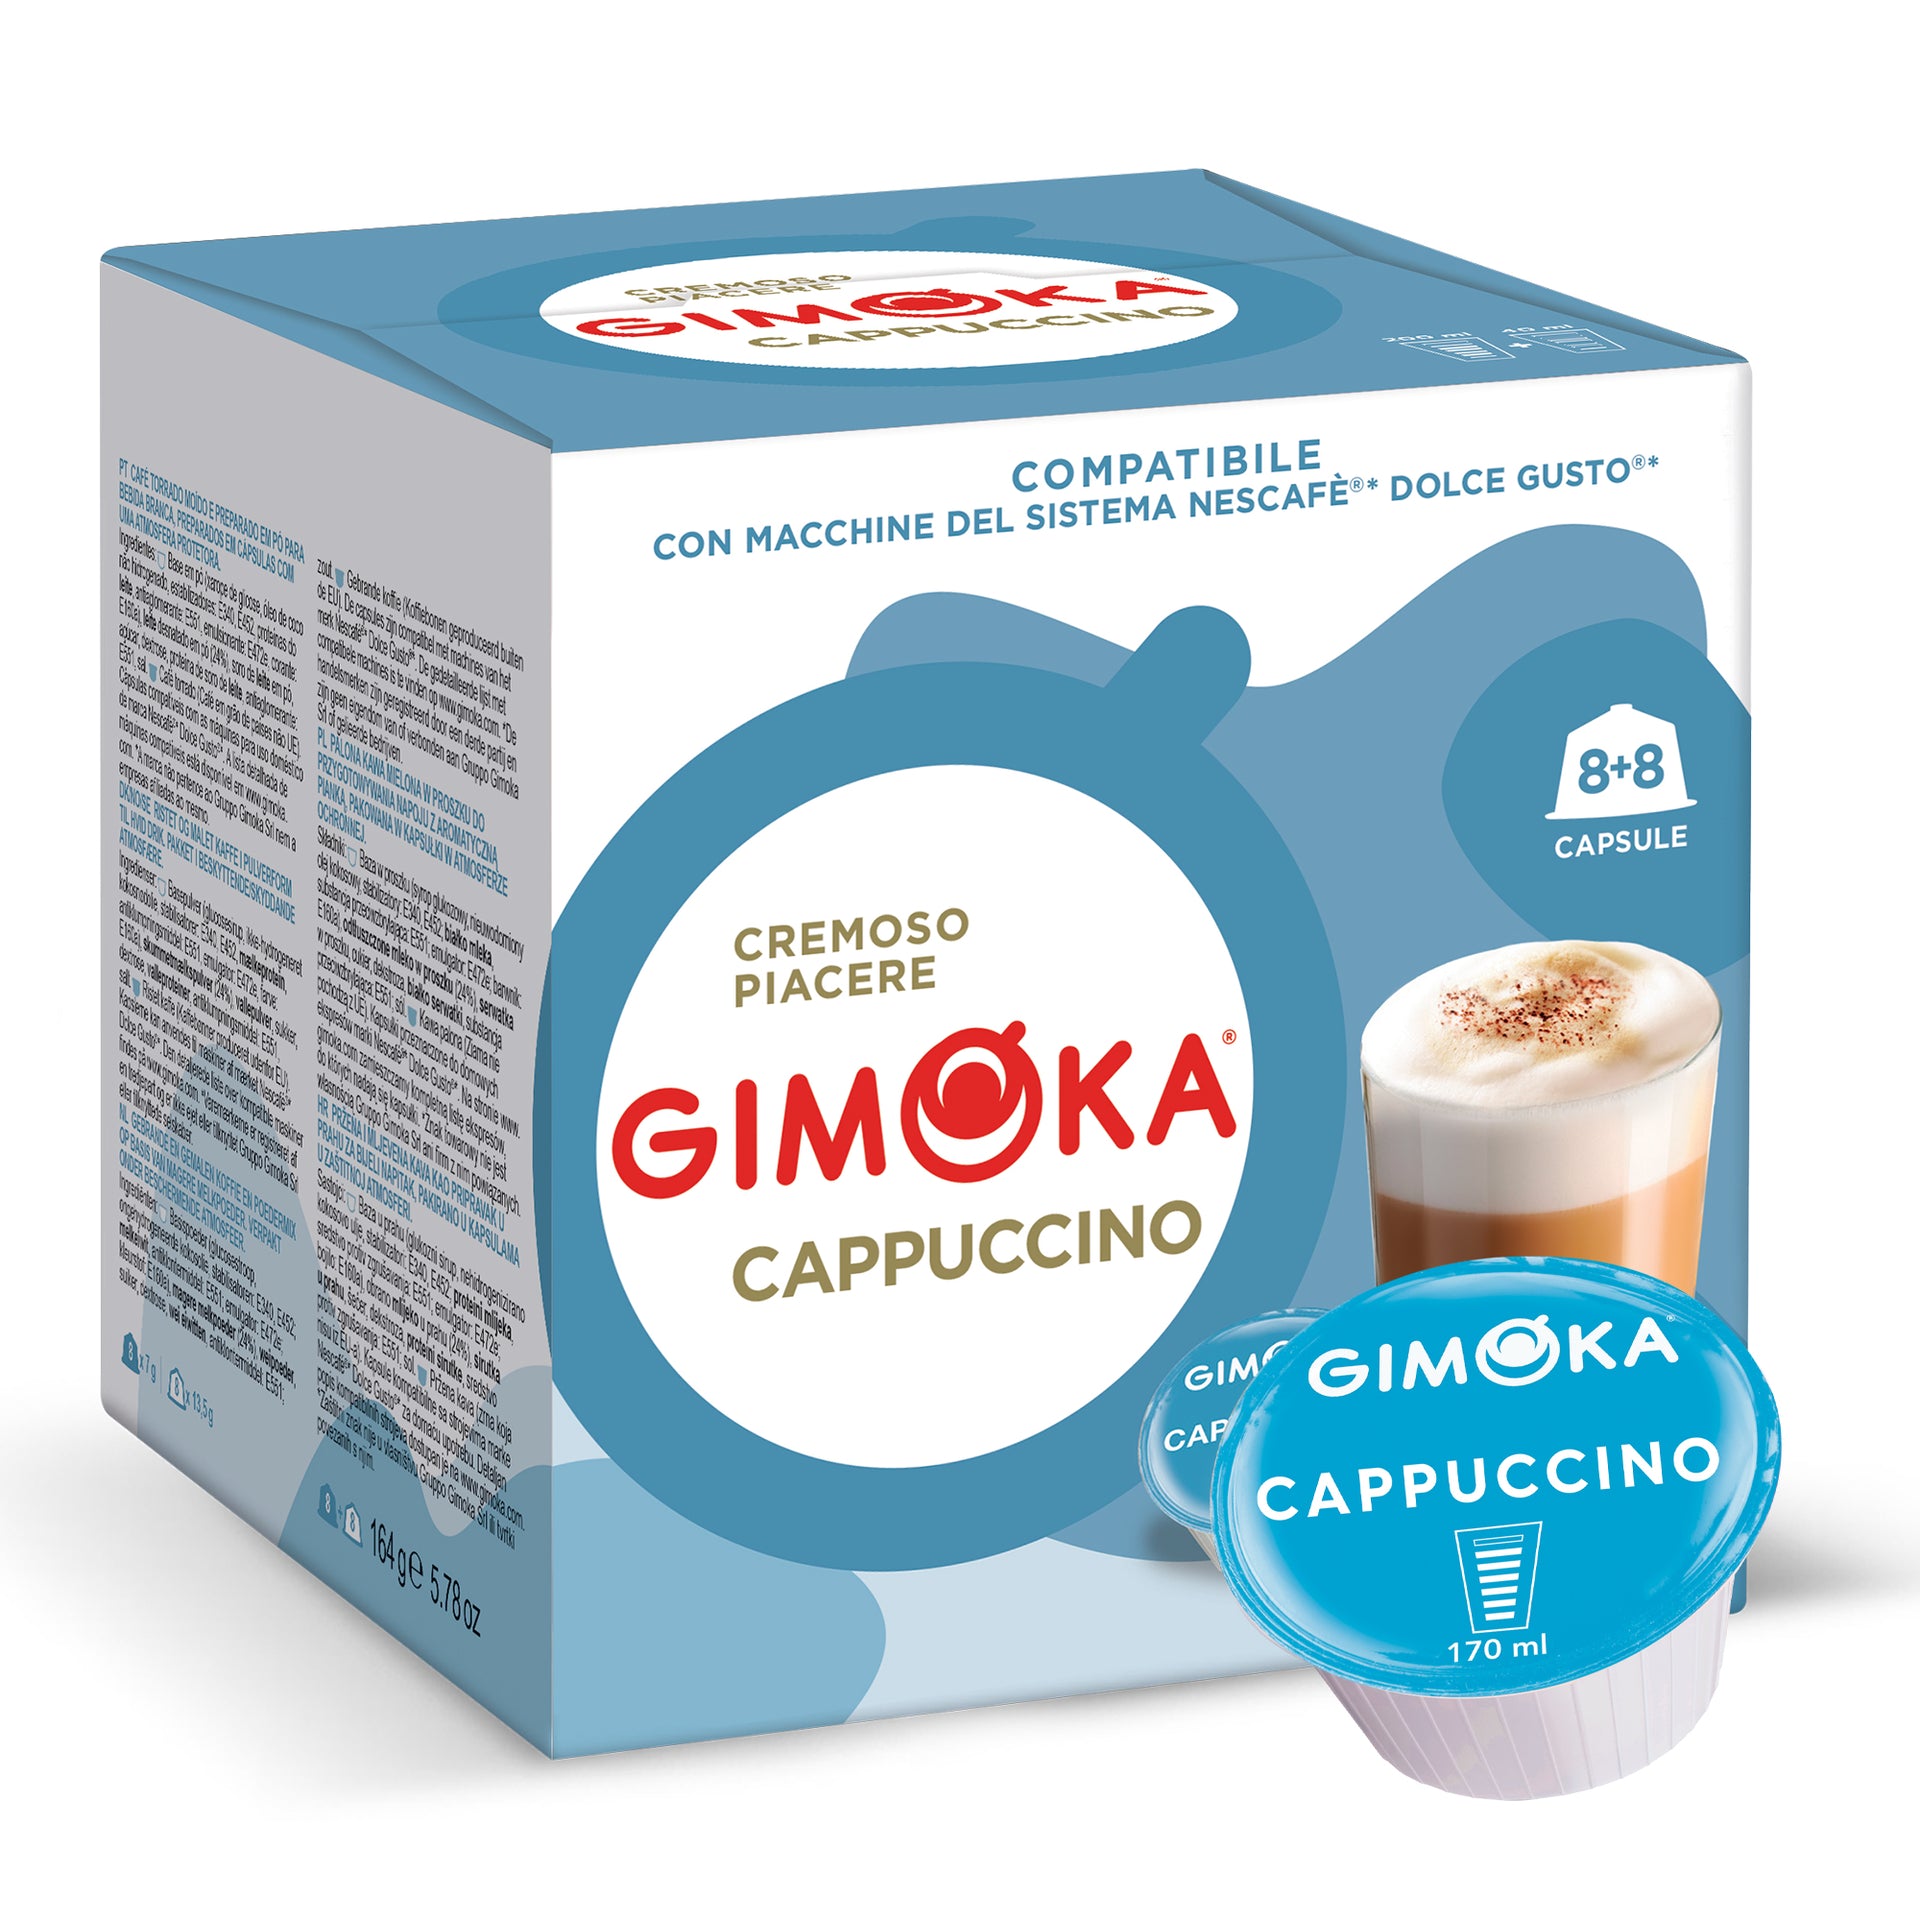 NESCAFE Dolce Gusto Coffee Pods, Latte Macchiato Coffee 16/Box